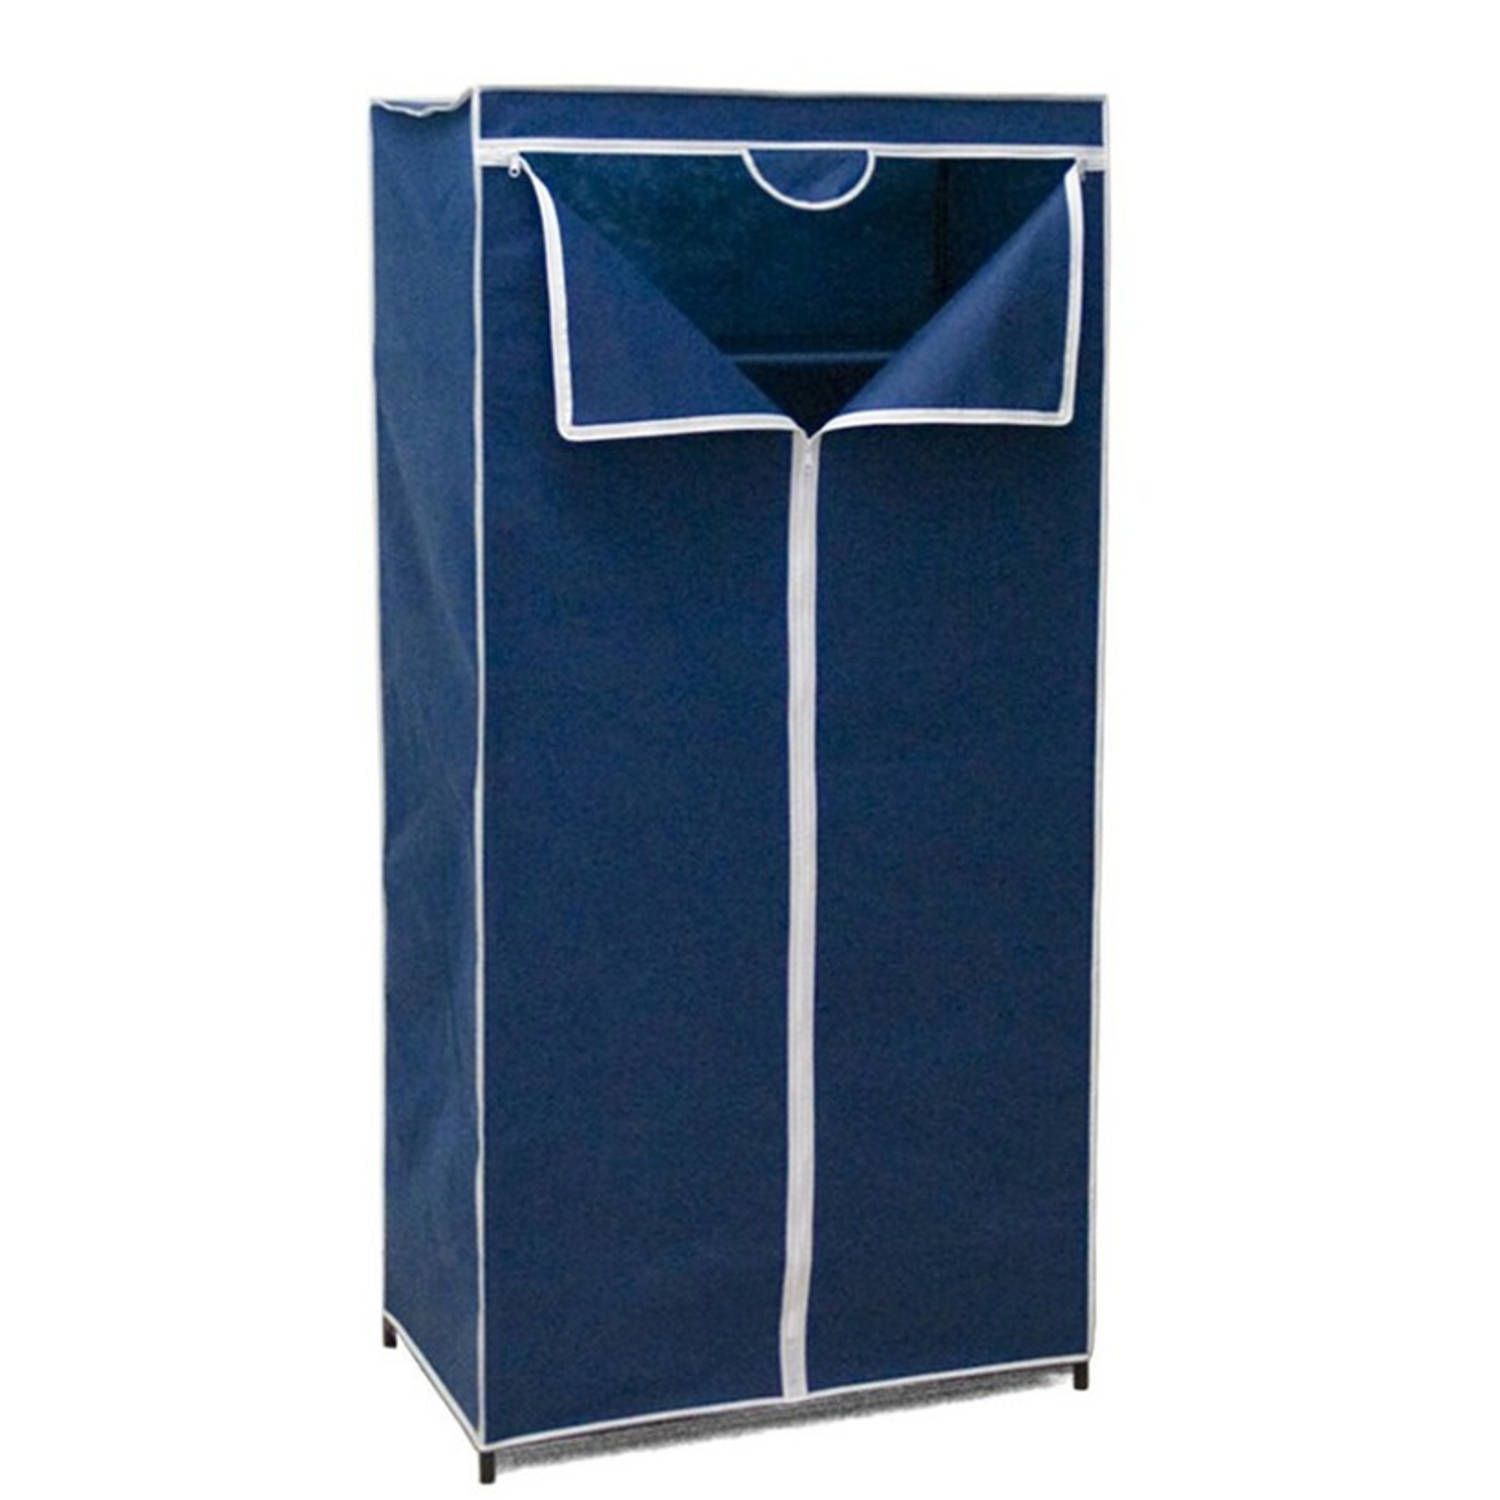 Mobiele opvouwbare kledingkast blauw 75 x 46 x 160 cm - Campingkledingkasten